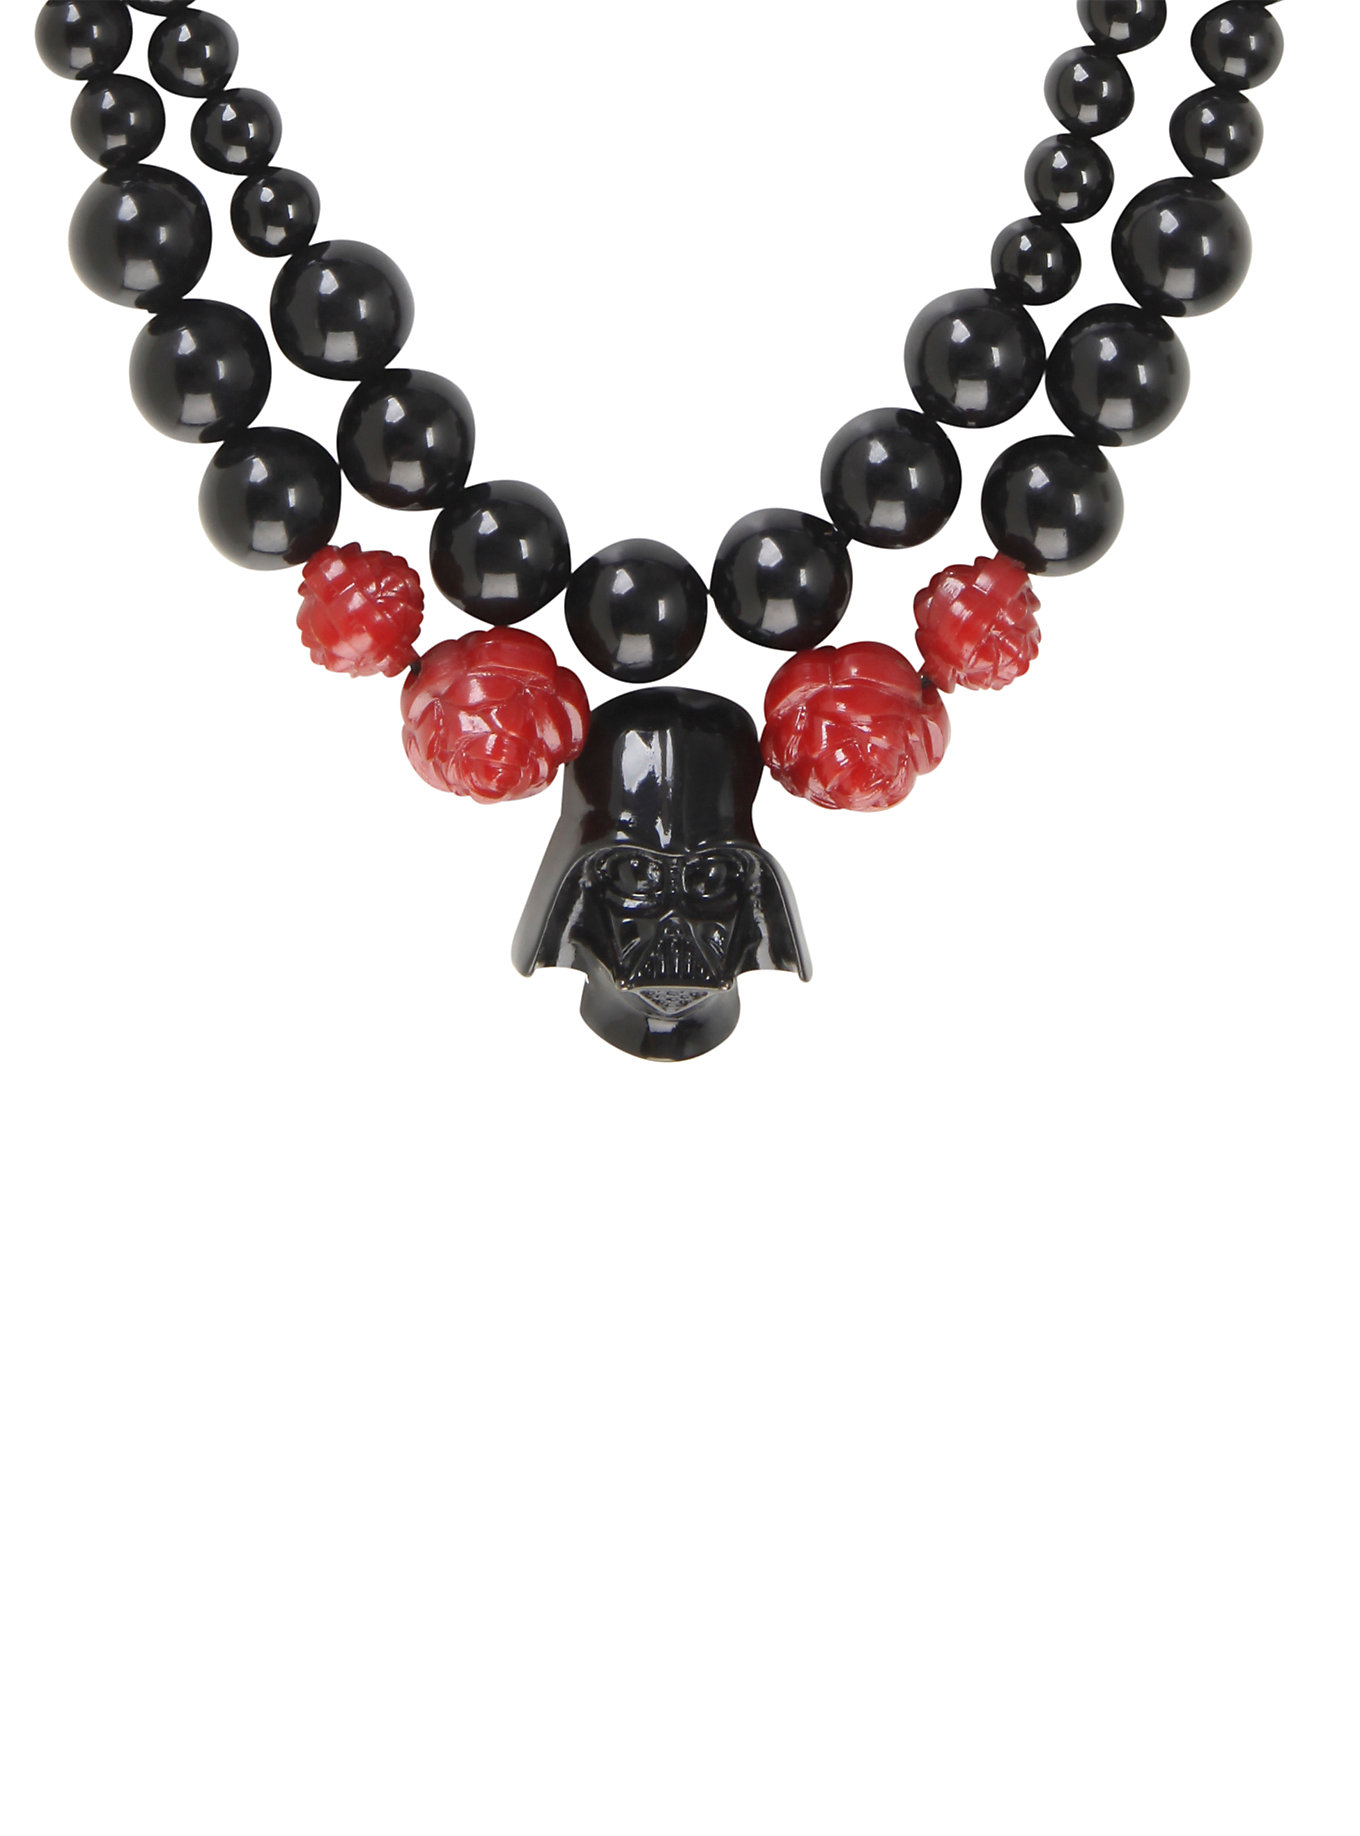 Darth Vader statement necklace